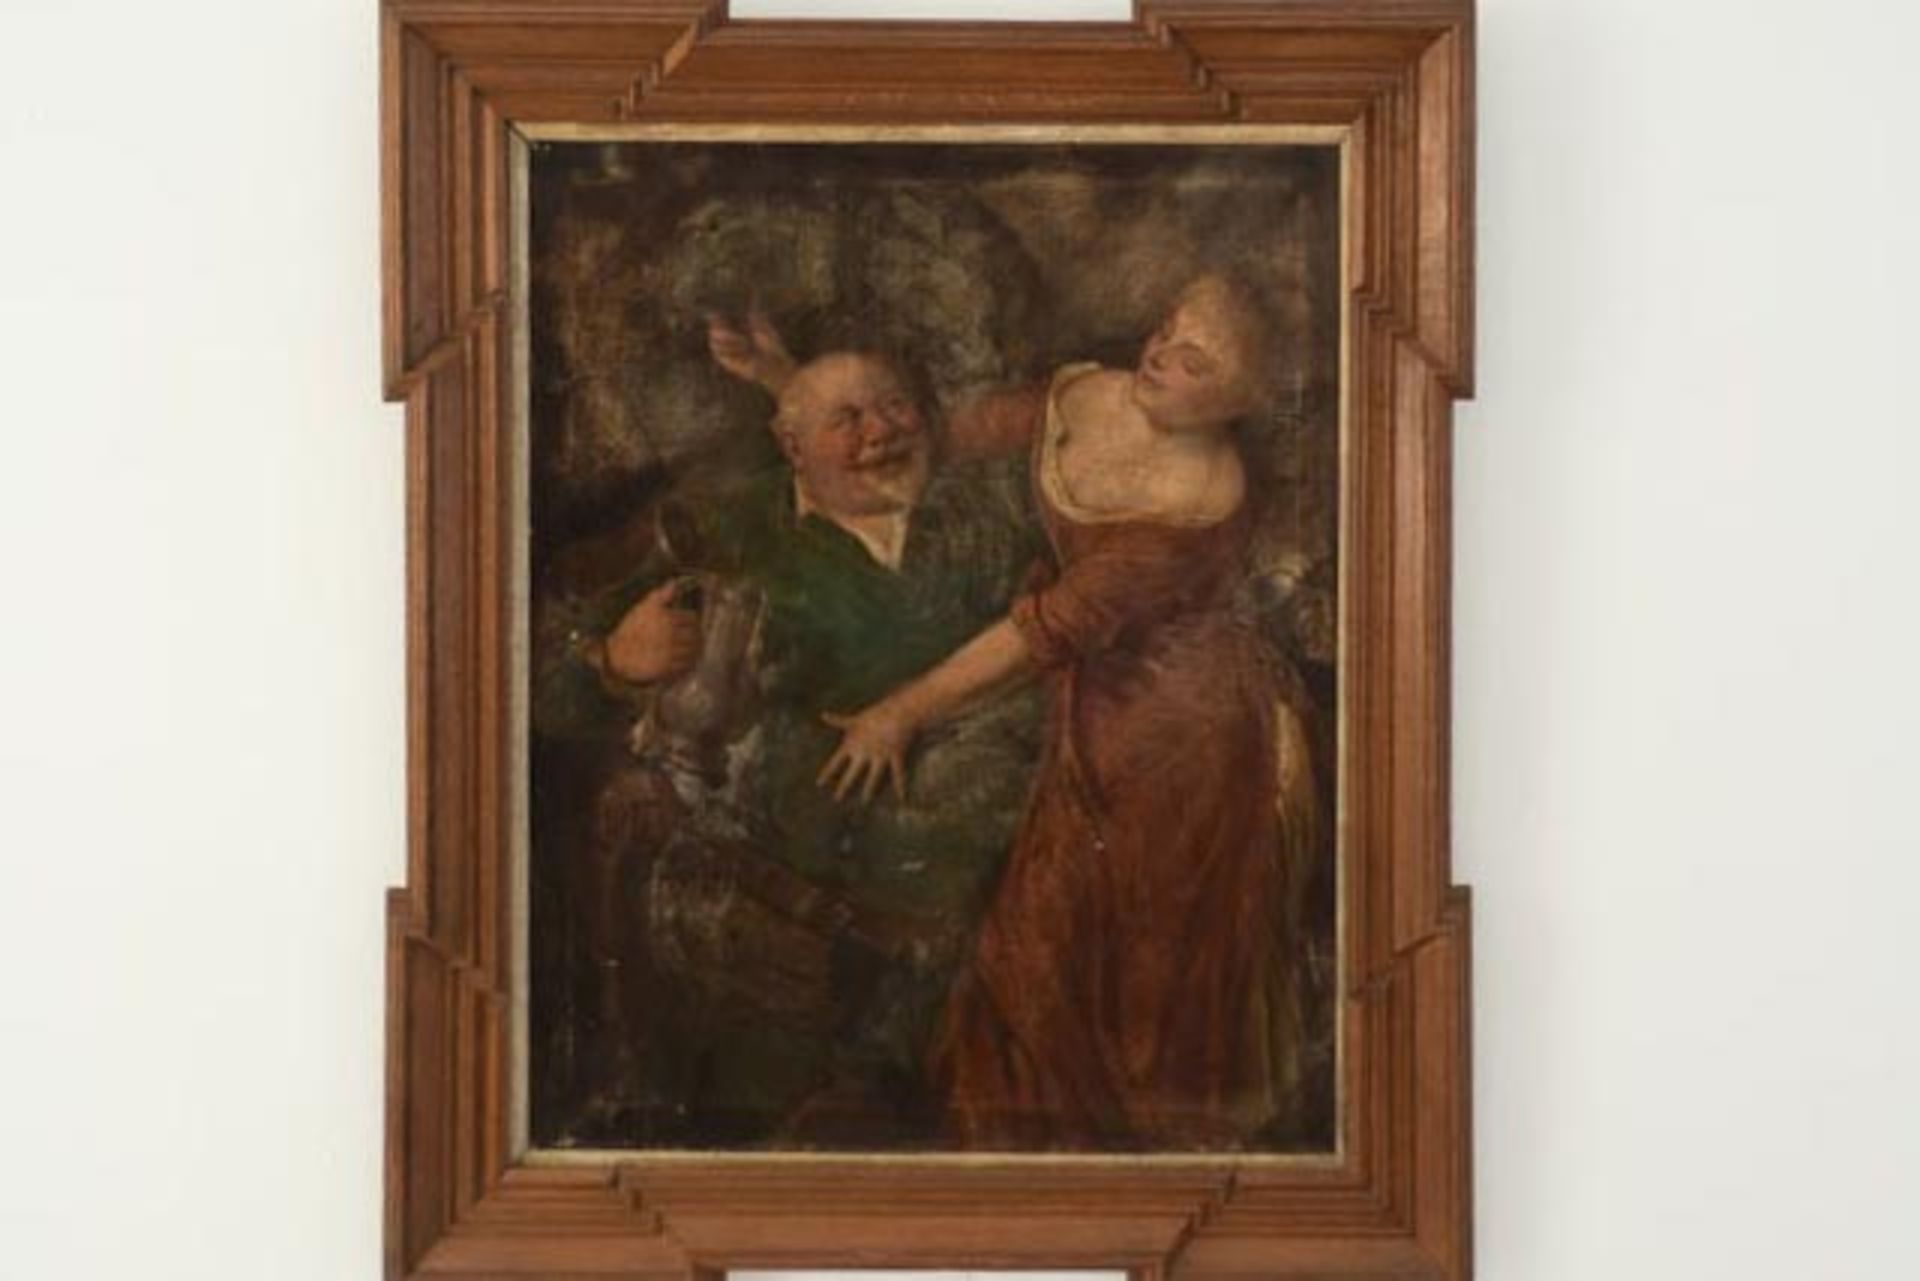 Gemälde "Der Biertrinker" mit junger Dame